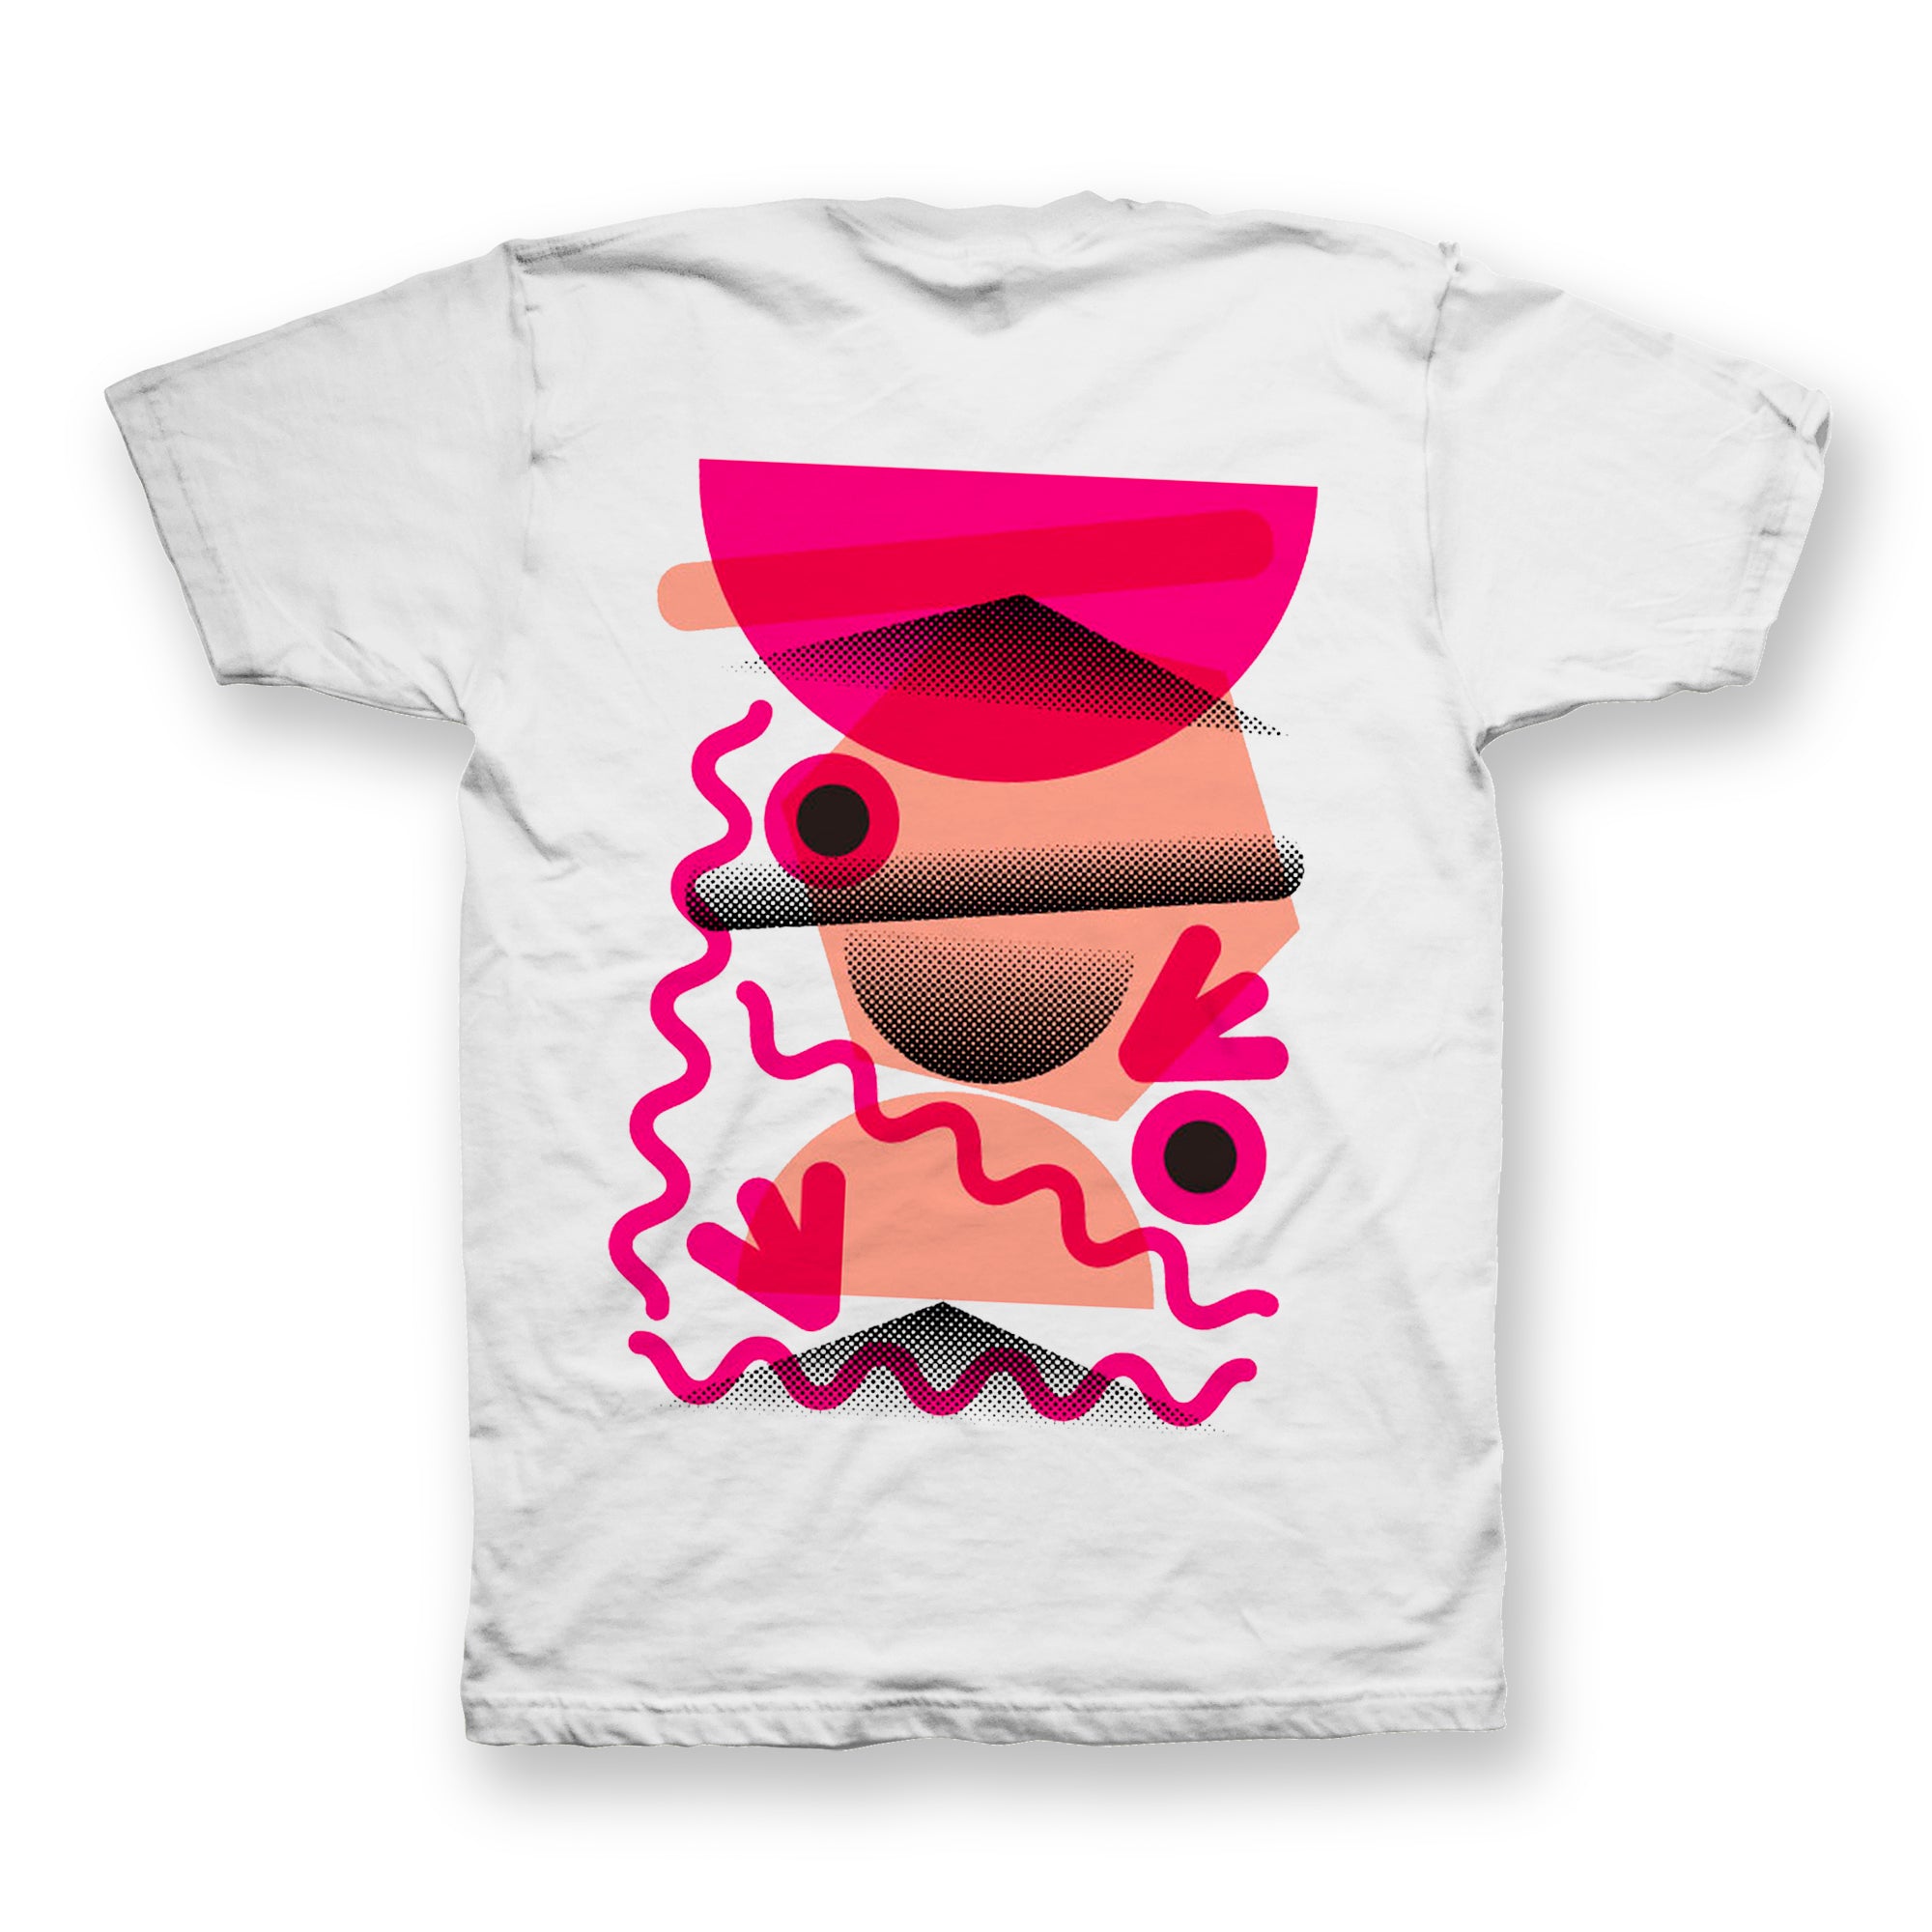 Freak & Unique V - Strawberry Laces T-Shirt